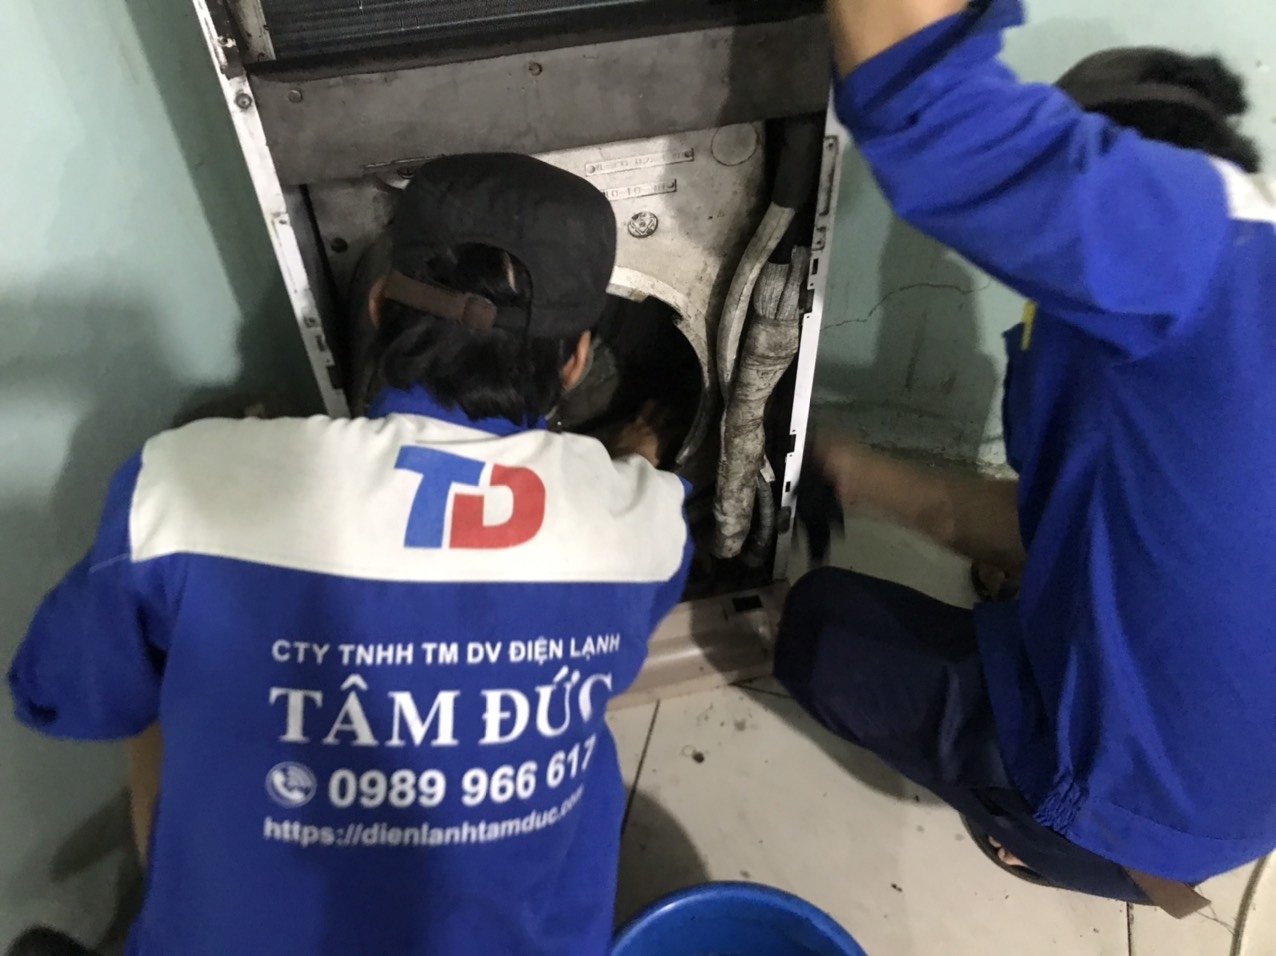 Bảo trì máy lạnh tại quận Tân Bình